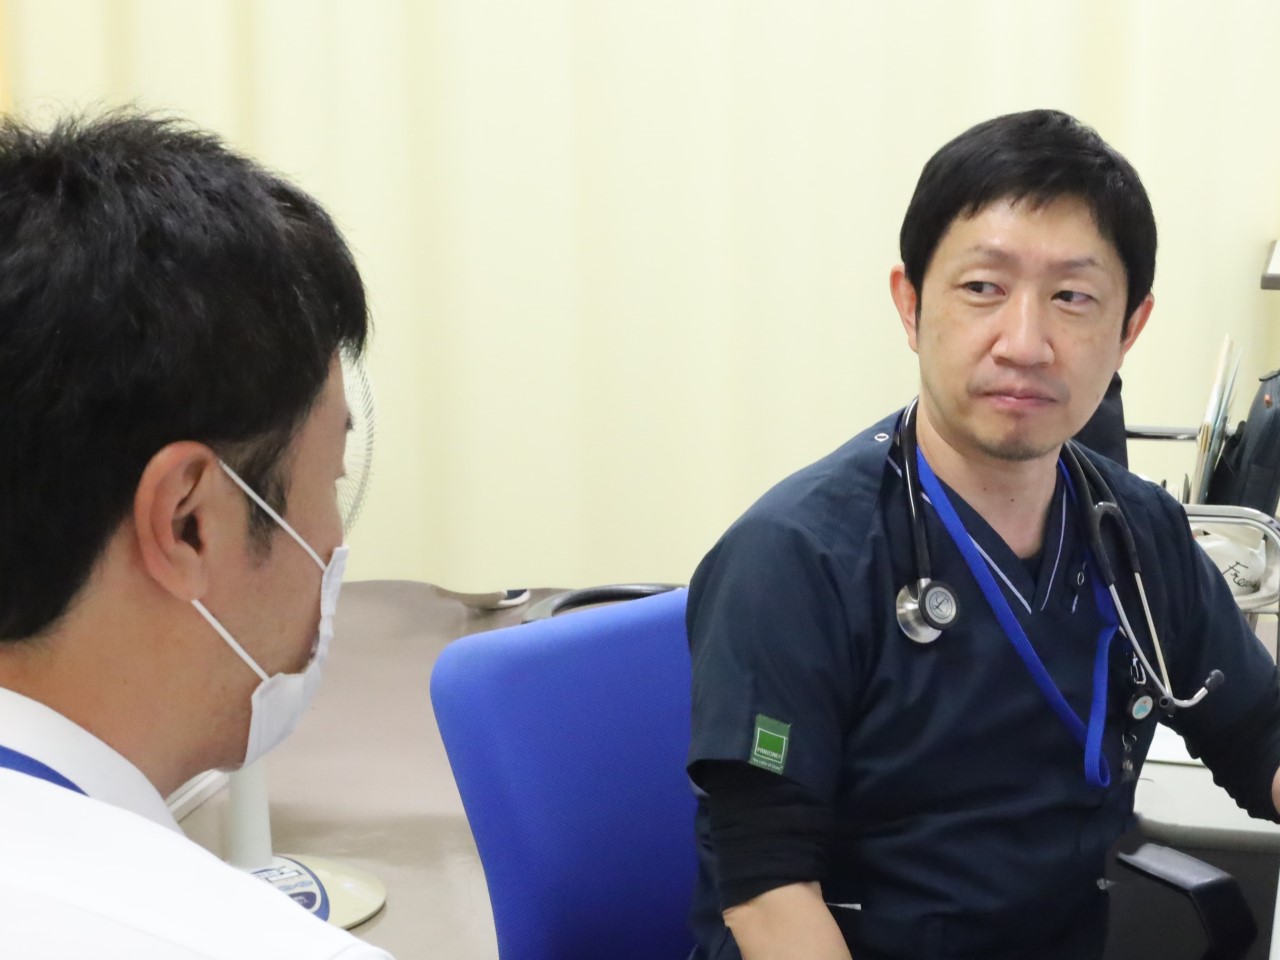 浜松医科大学医学部附属病院 輸血・細胞治療部 部長 小野孝明